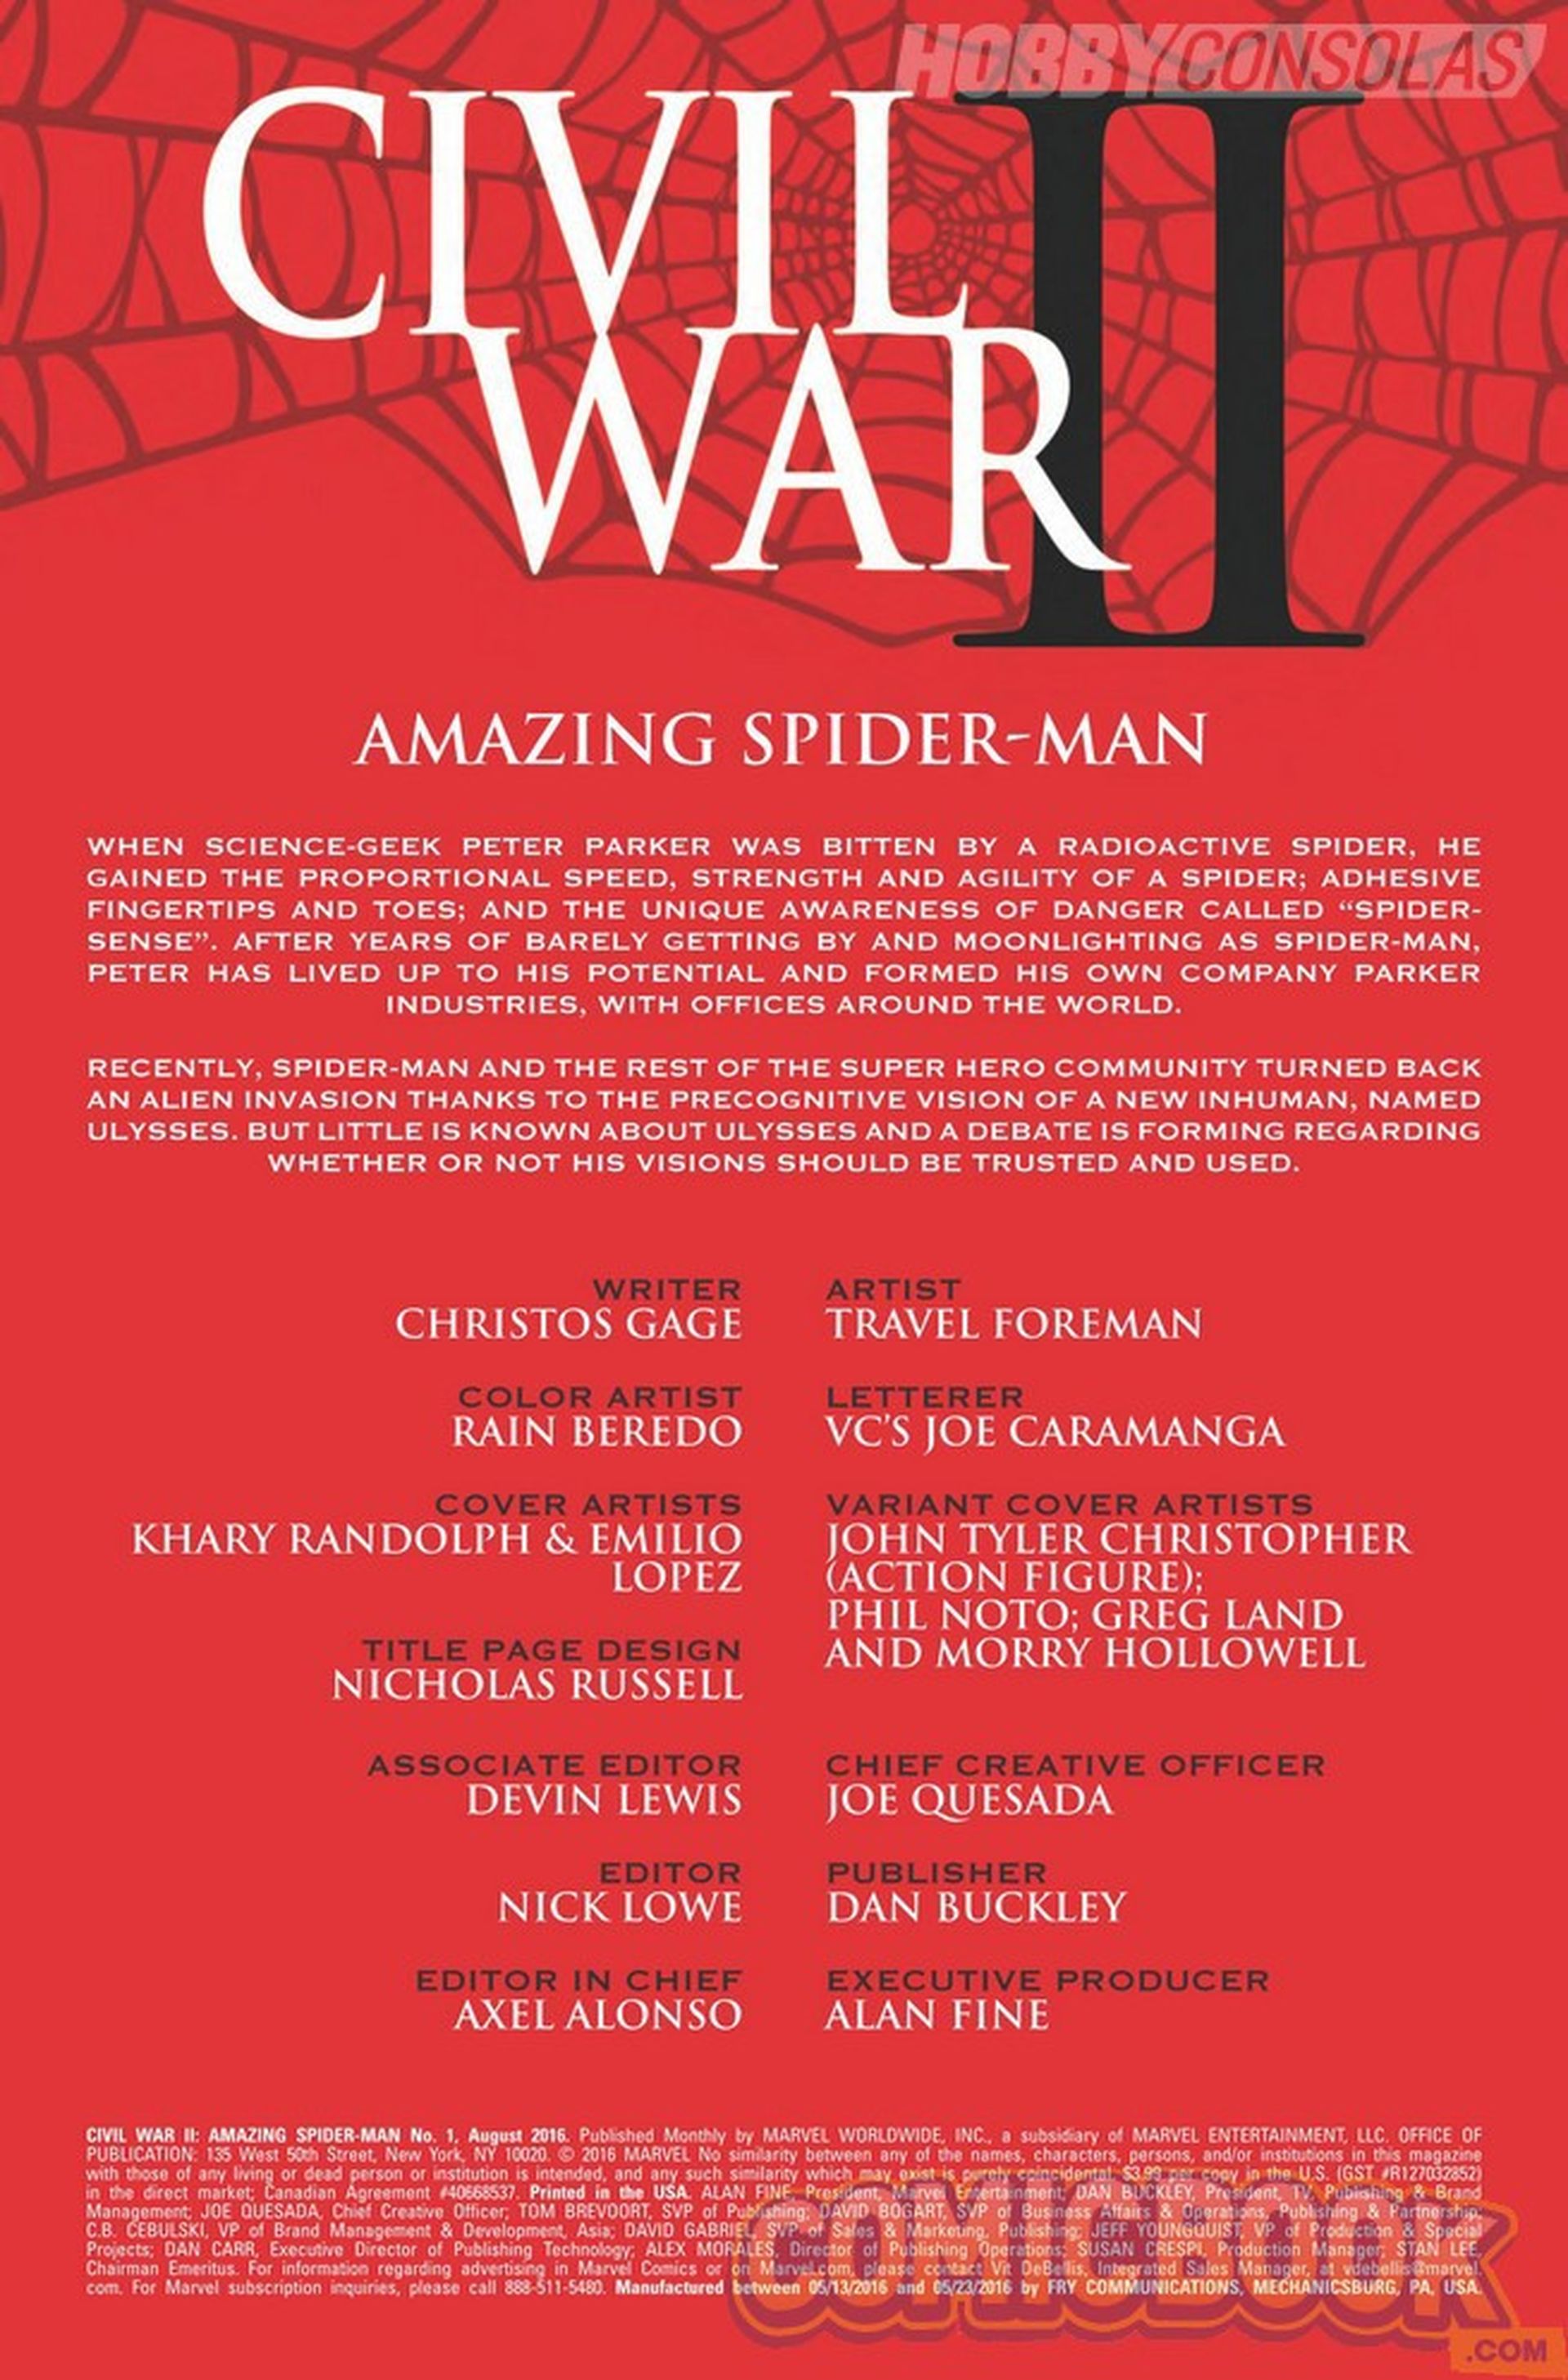 Civil War II: Amazing Spider-Man - Vista previa de lanzamiento